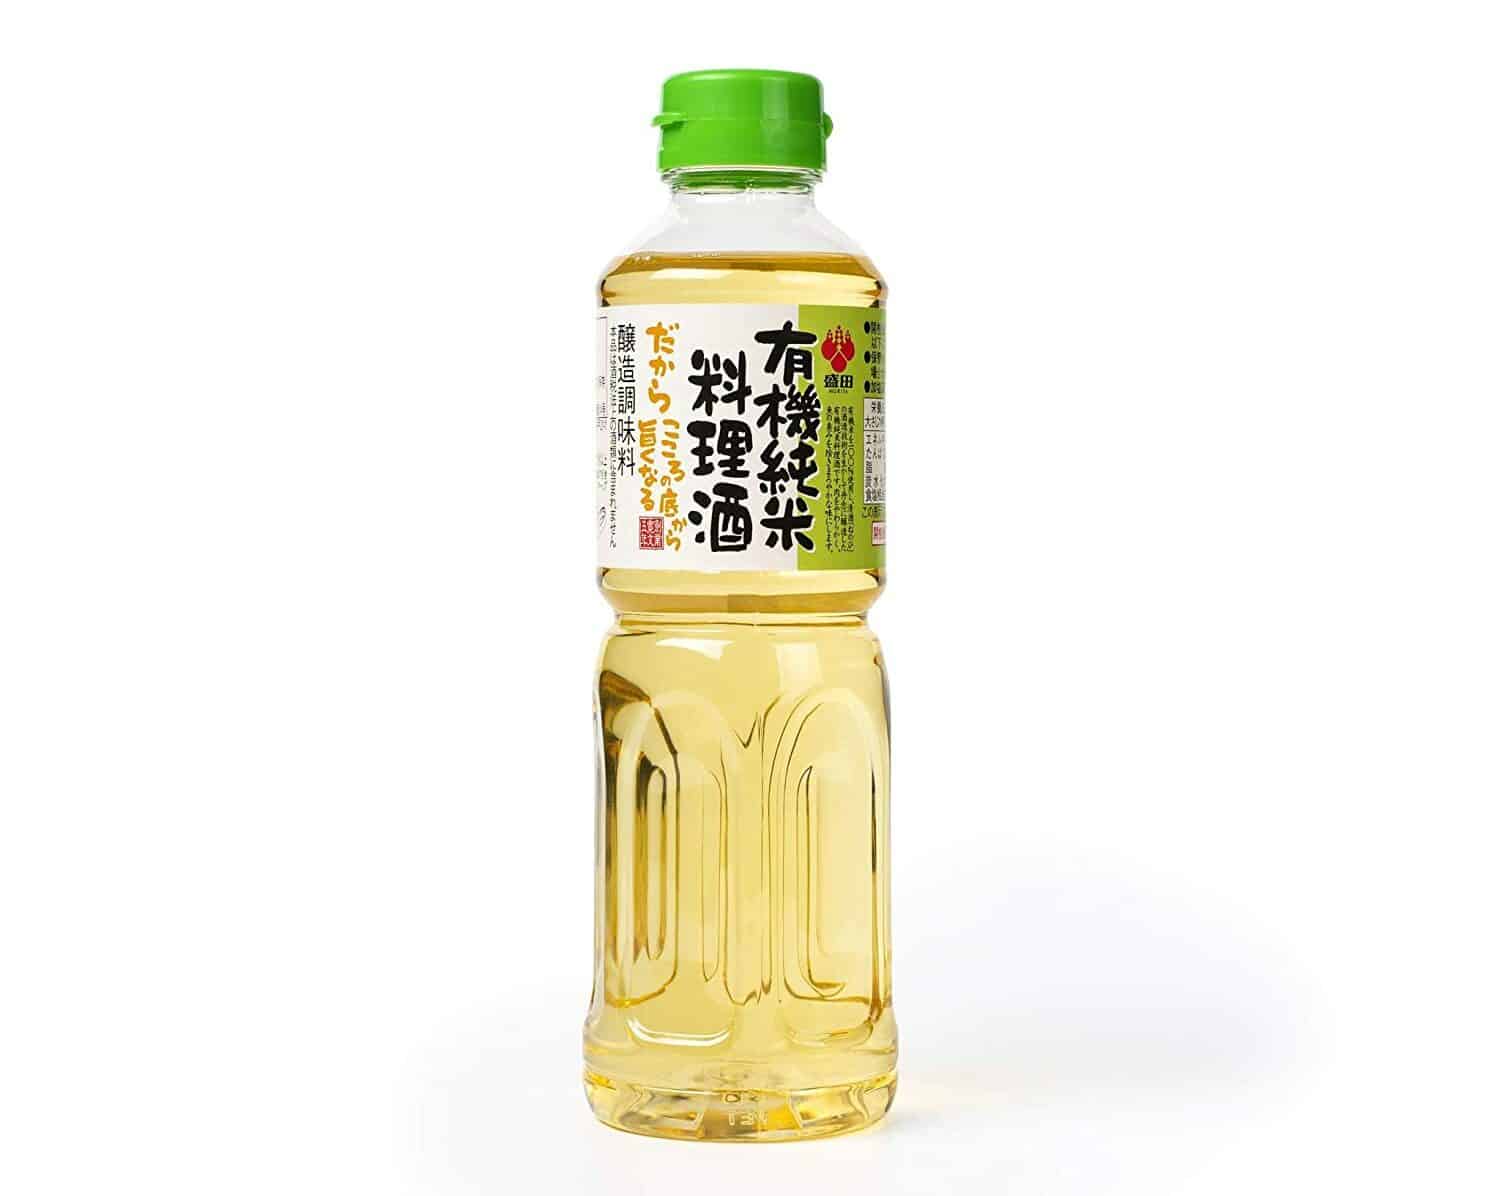 בעסטער אָרגאַניק קוקינג צוליב: Morita Premium Organic Cooking Sake